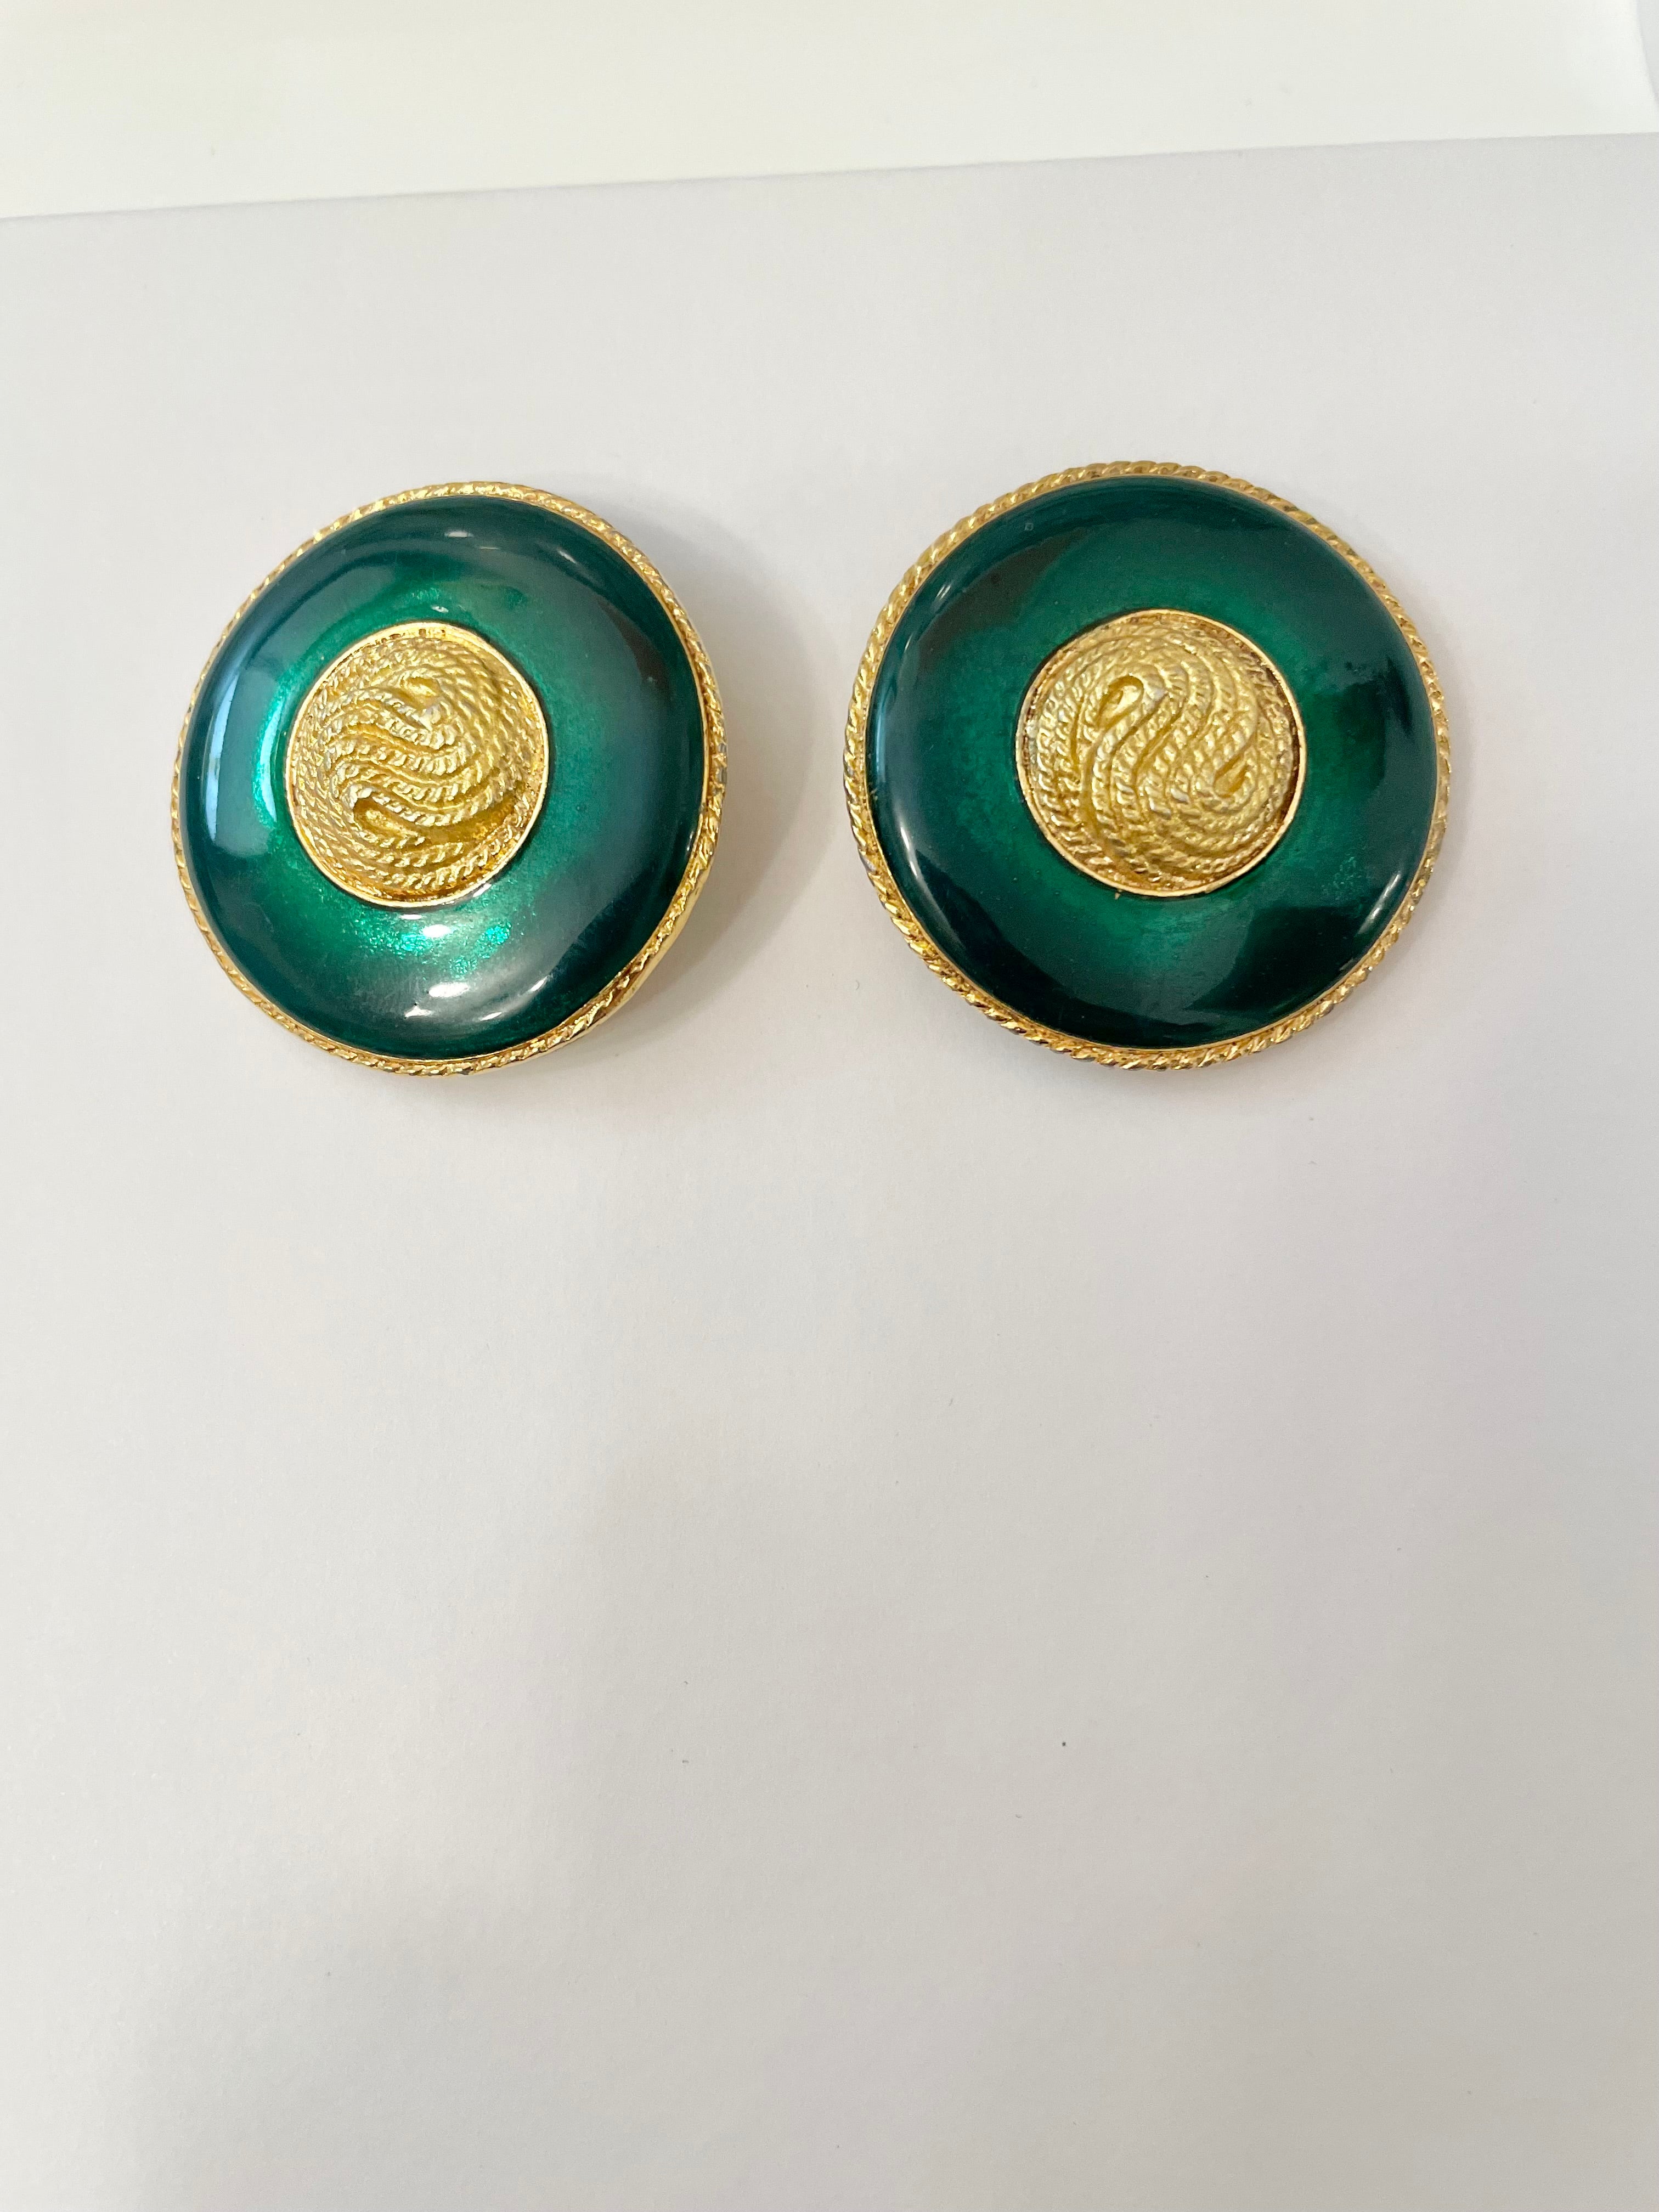 1970's truly elegant emerald enamel button earrings...So divine!